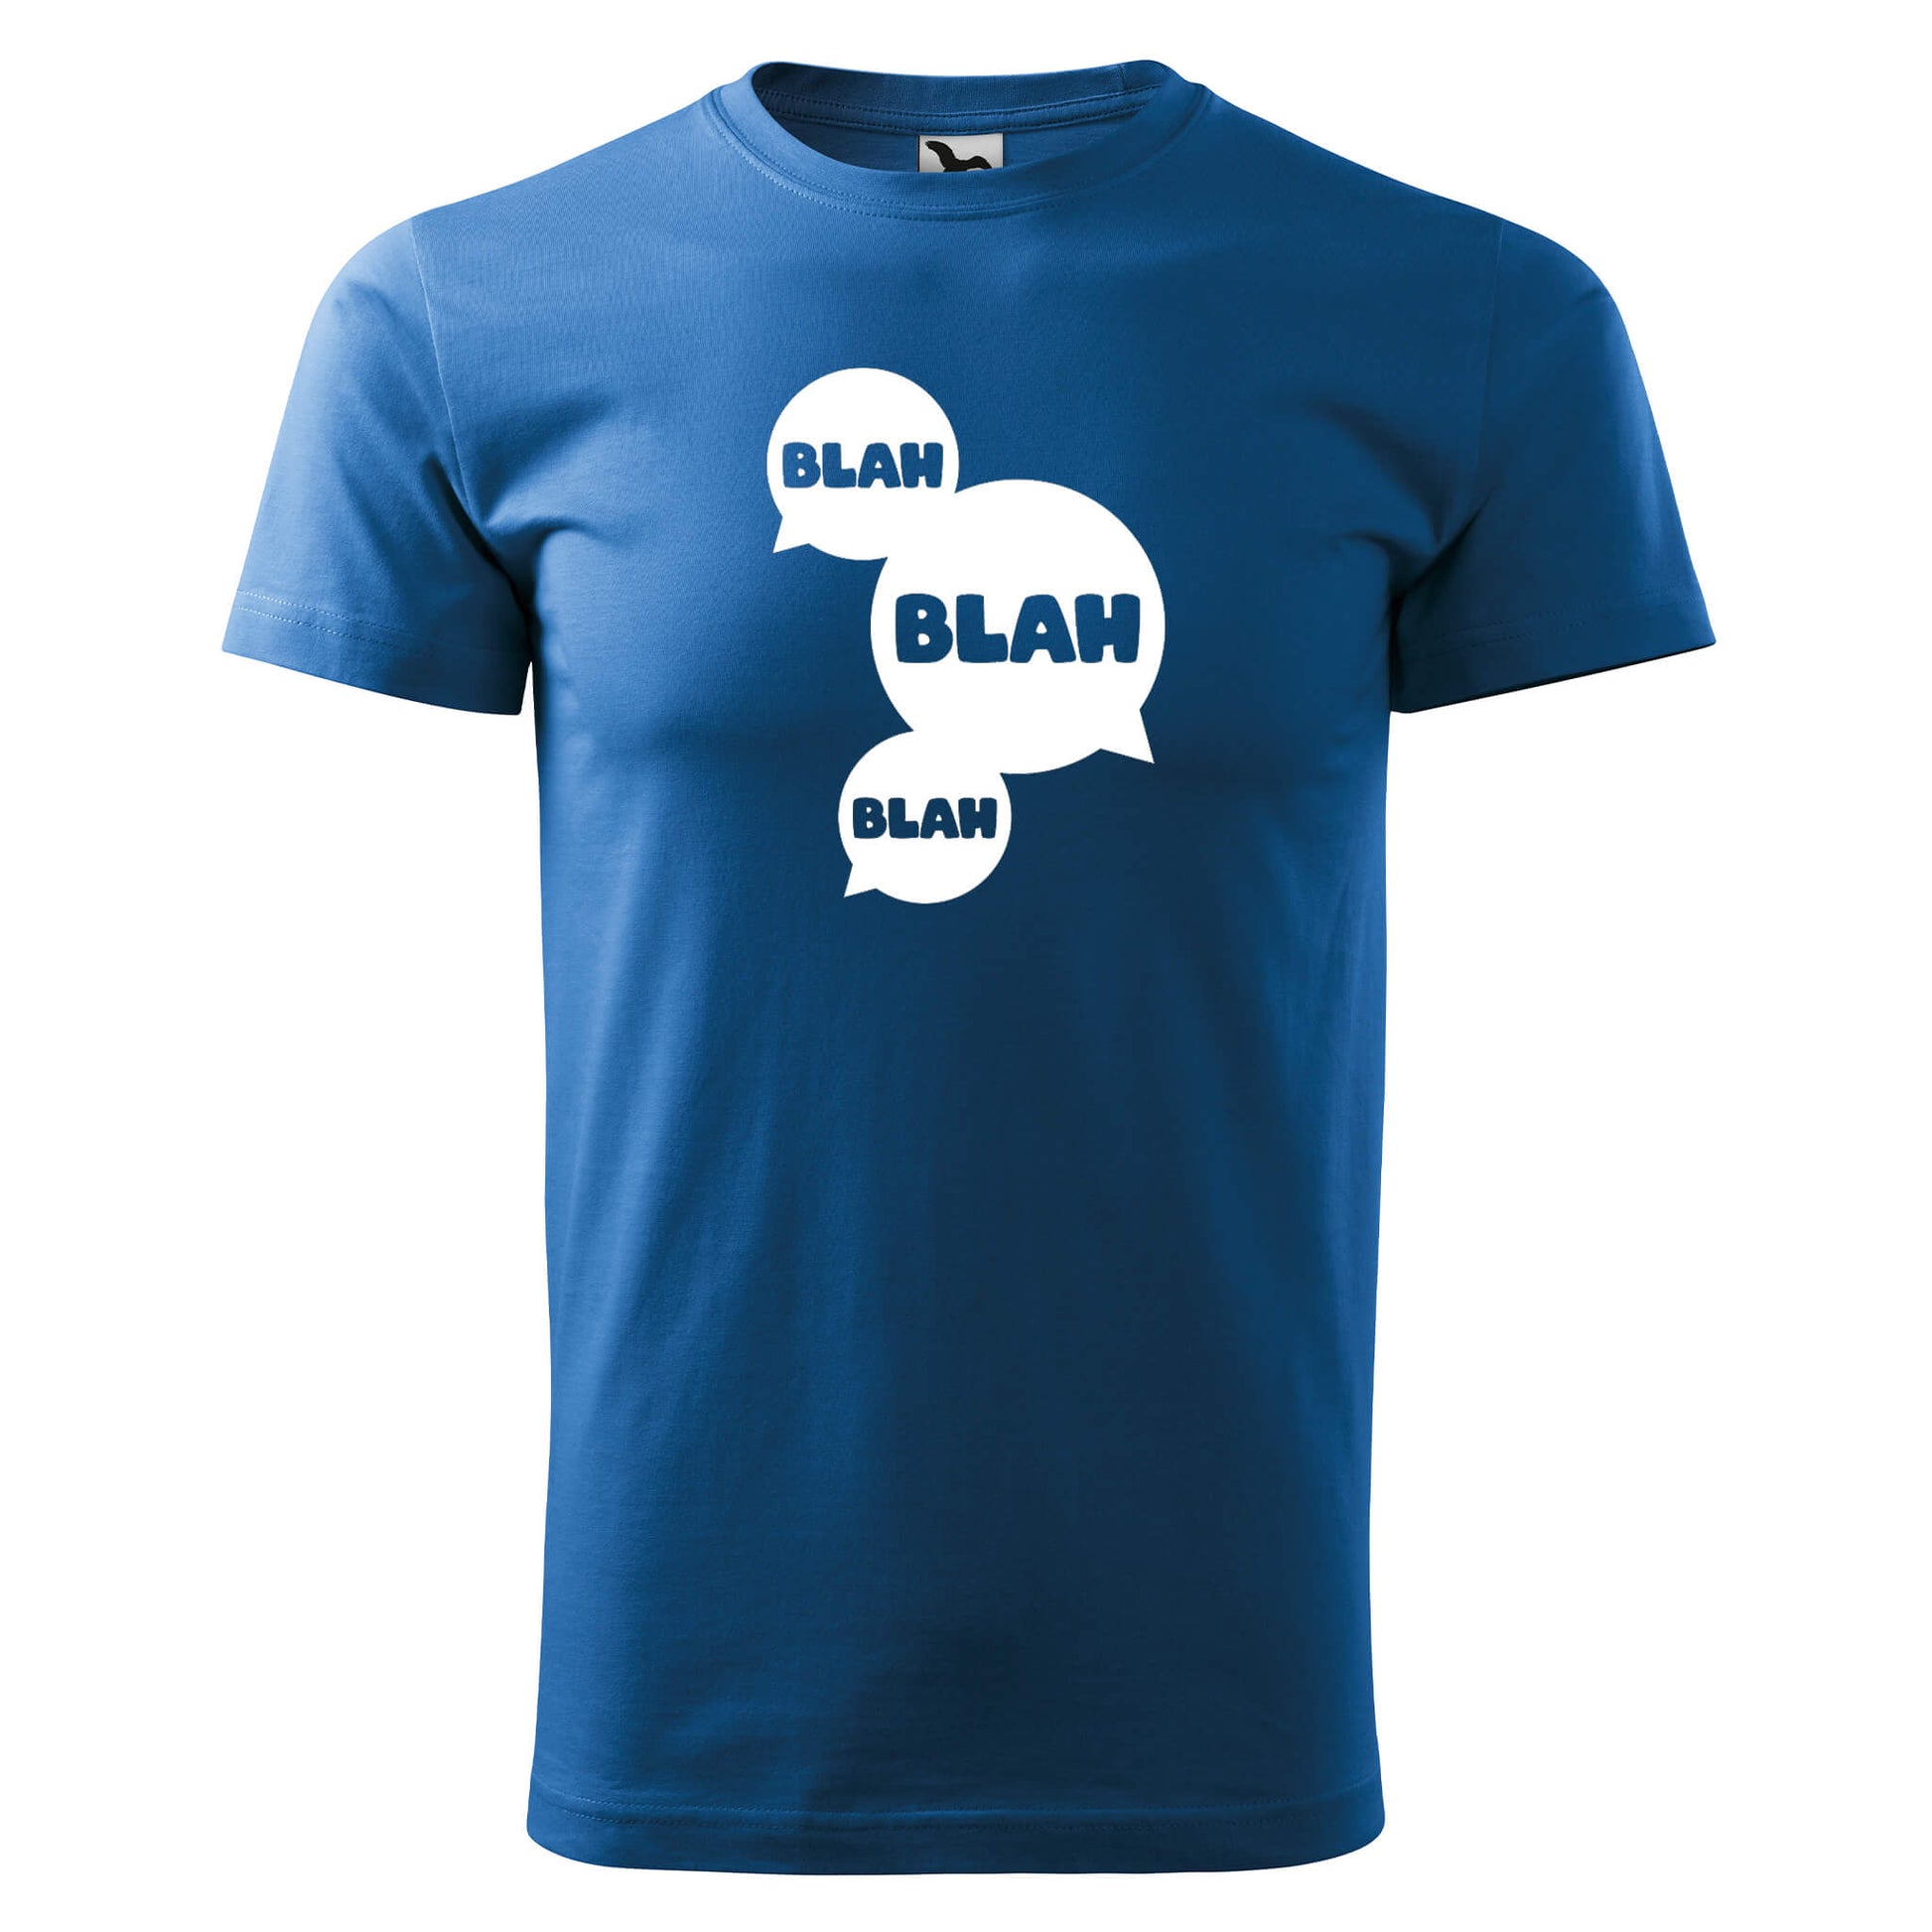 T-shirt - blah blah blah - rvdesignprint